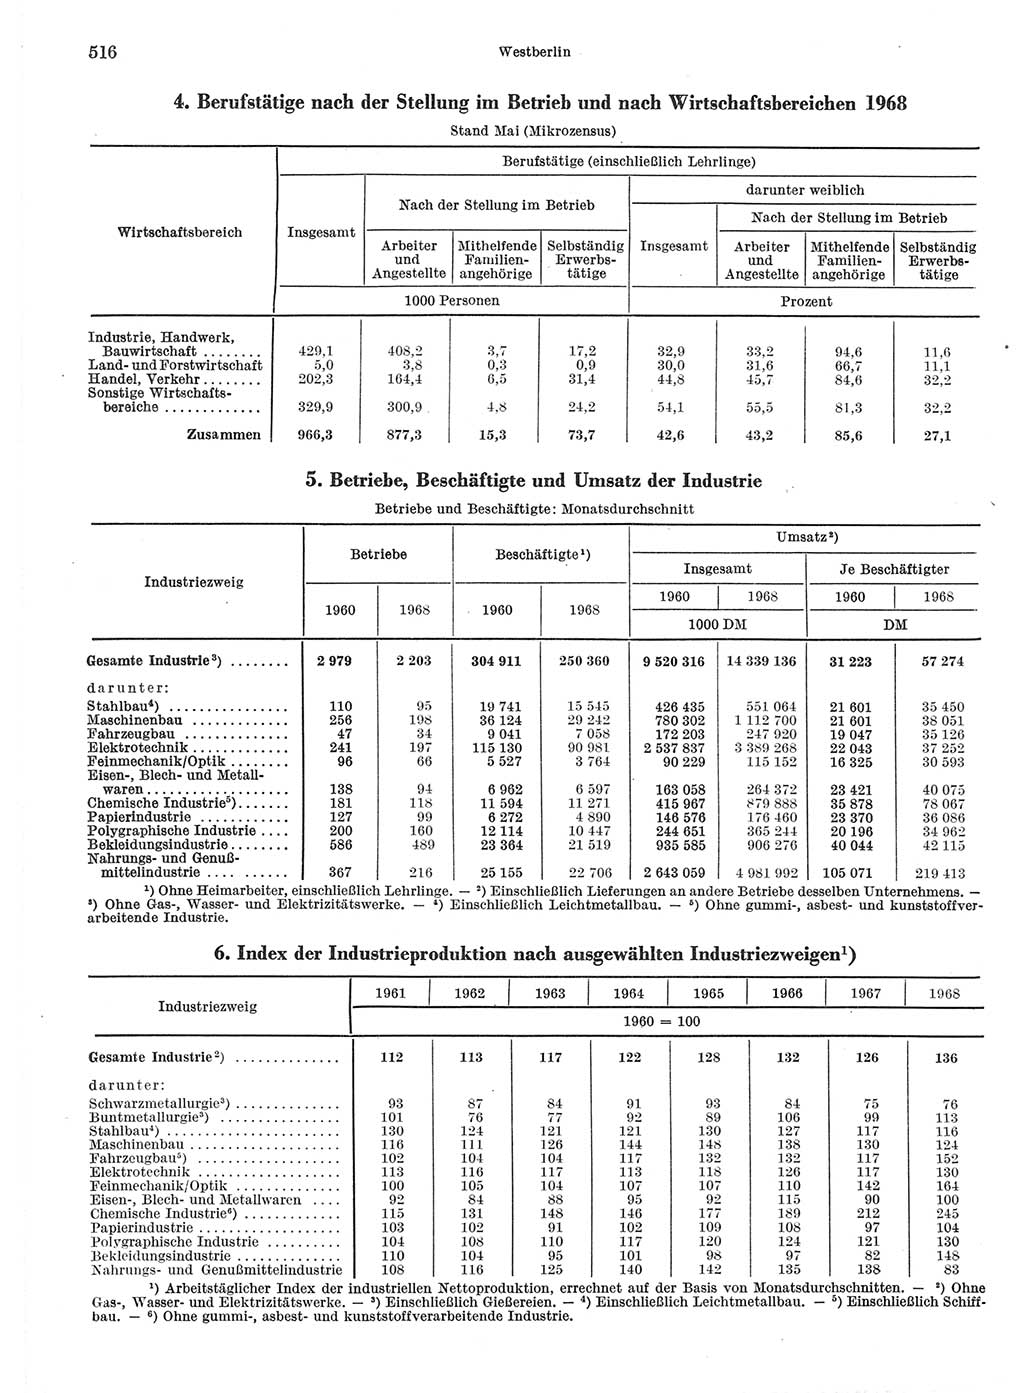 Statistisches Jahrbuch der Deutschen Demokratischen Republik (DDR) 1970, Seite 516 (Stat. Jb. DDR 1970, S. 516)